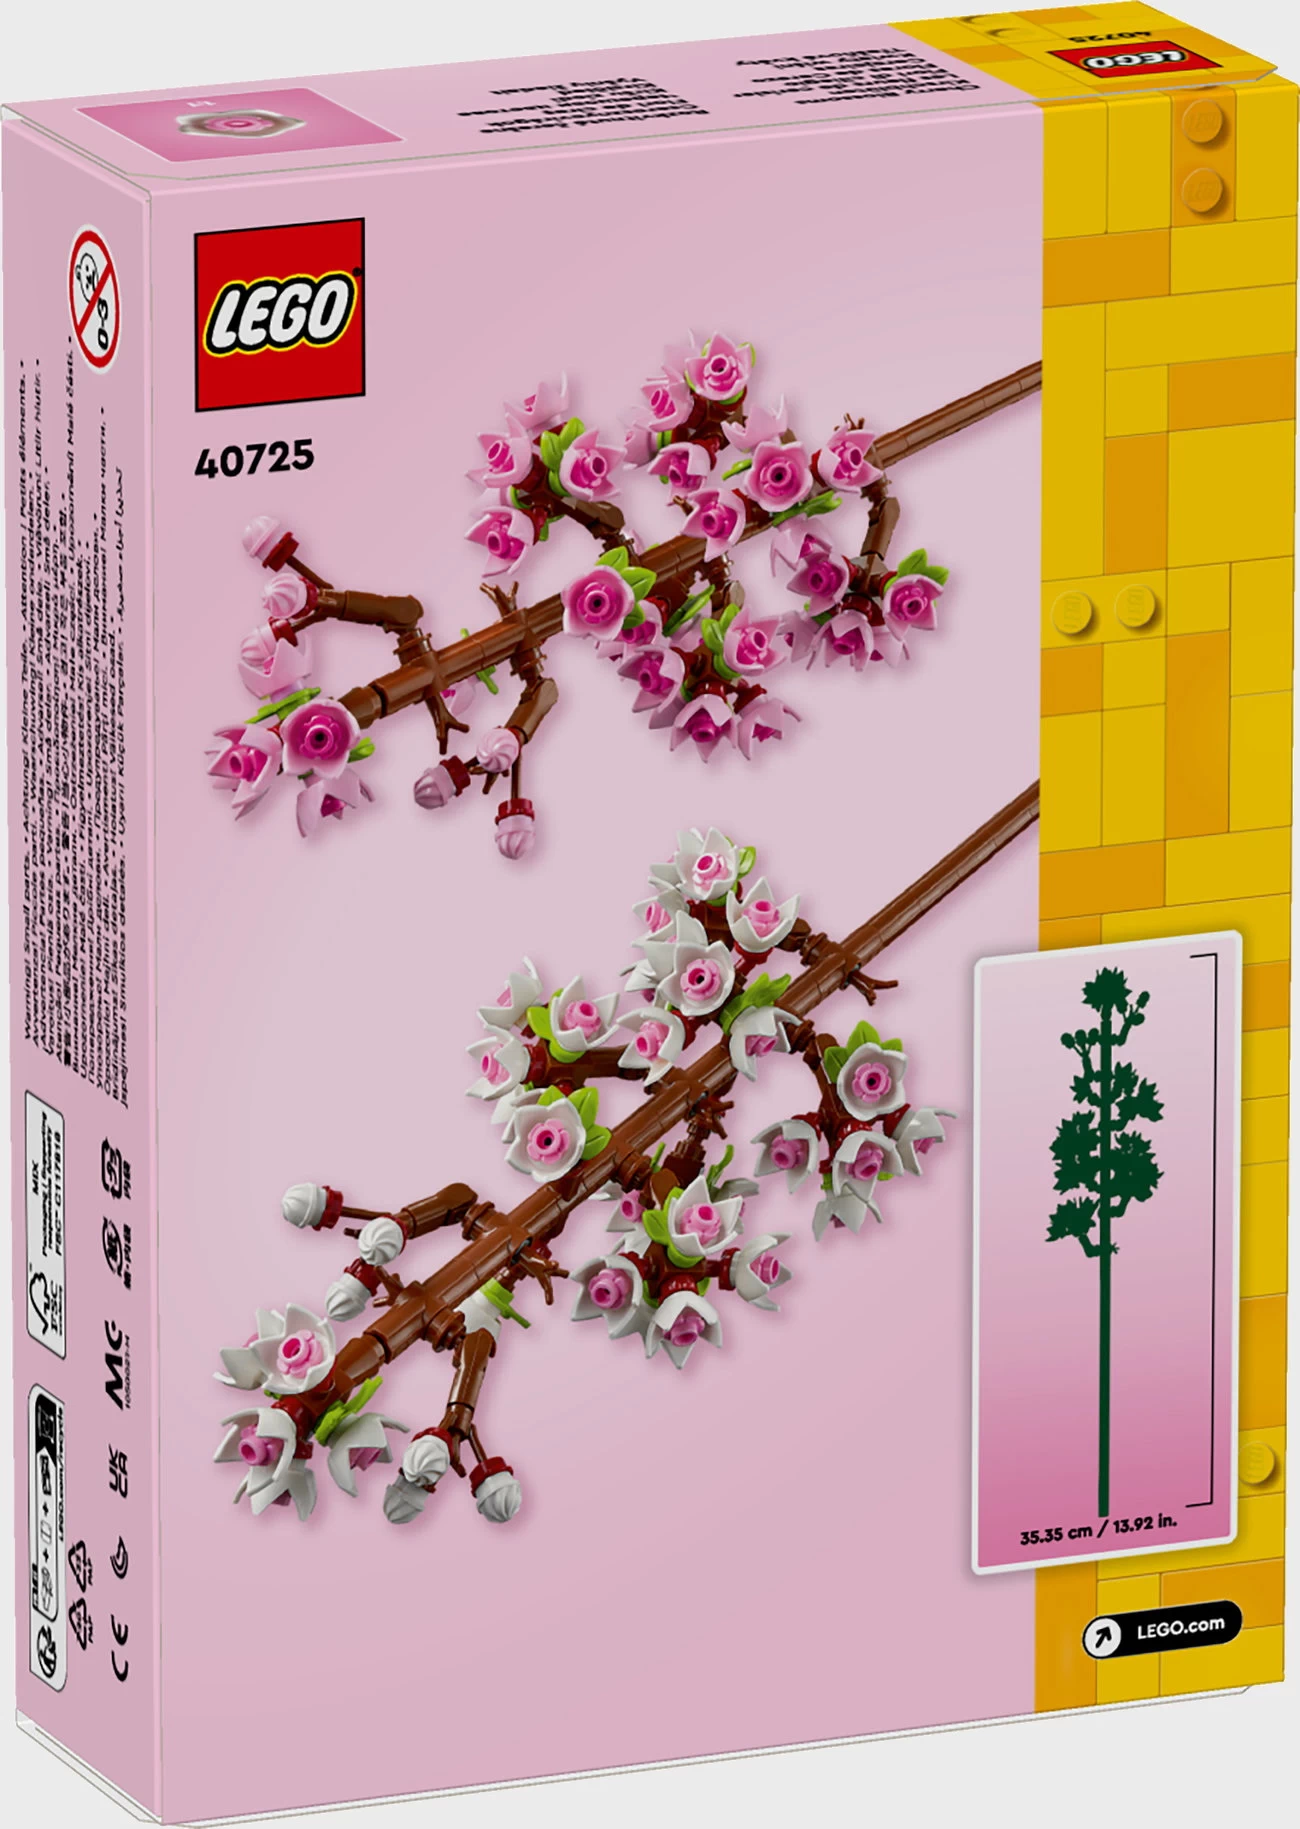 LEGO Creator 40725 - Kirschblüten